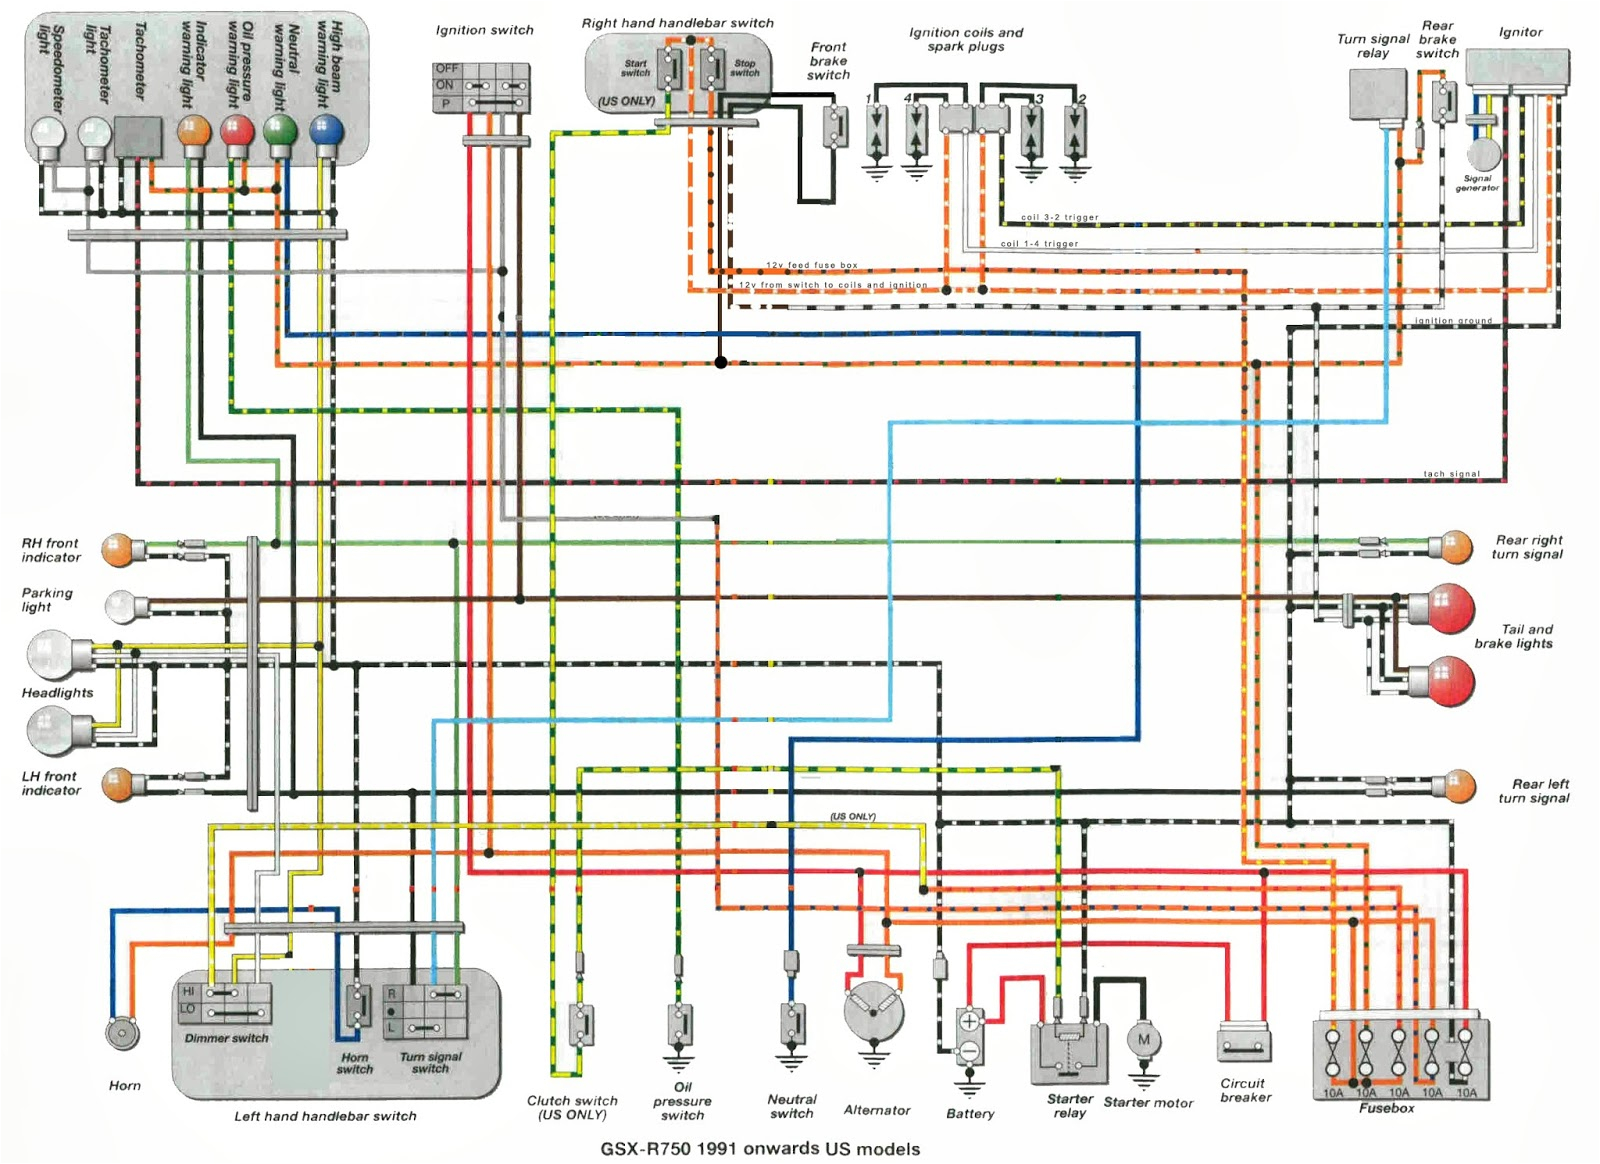 wiring diagram suzuki gsxr 600 1993 the wiring diagram